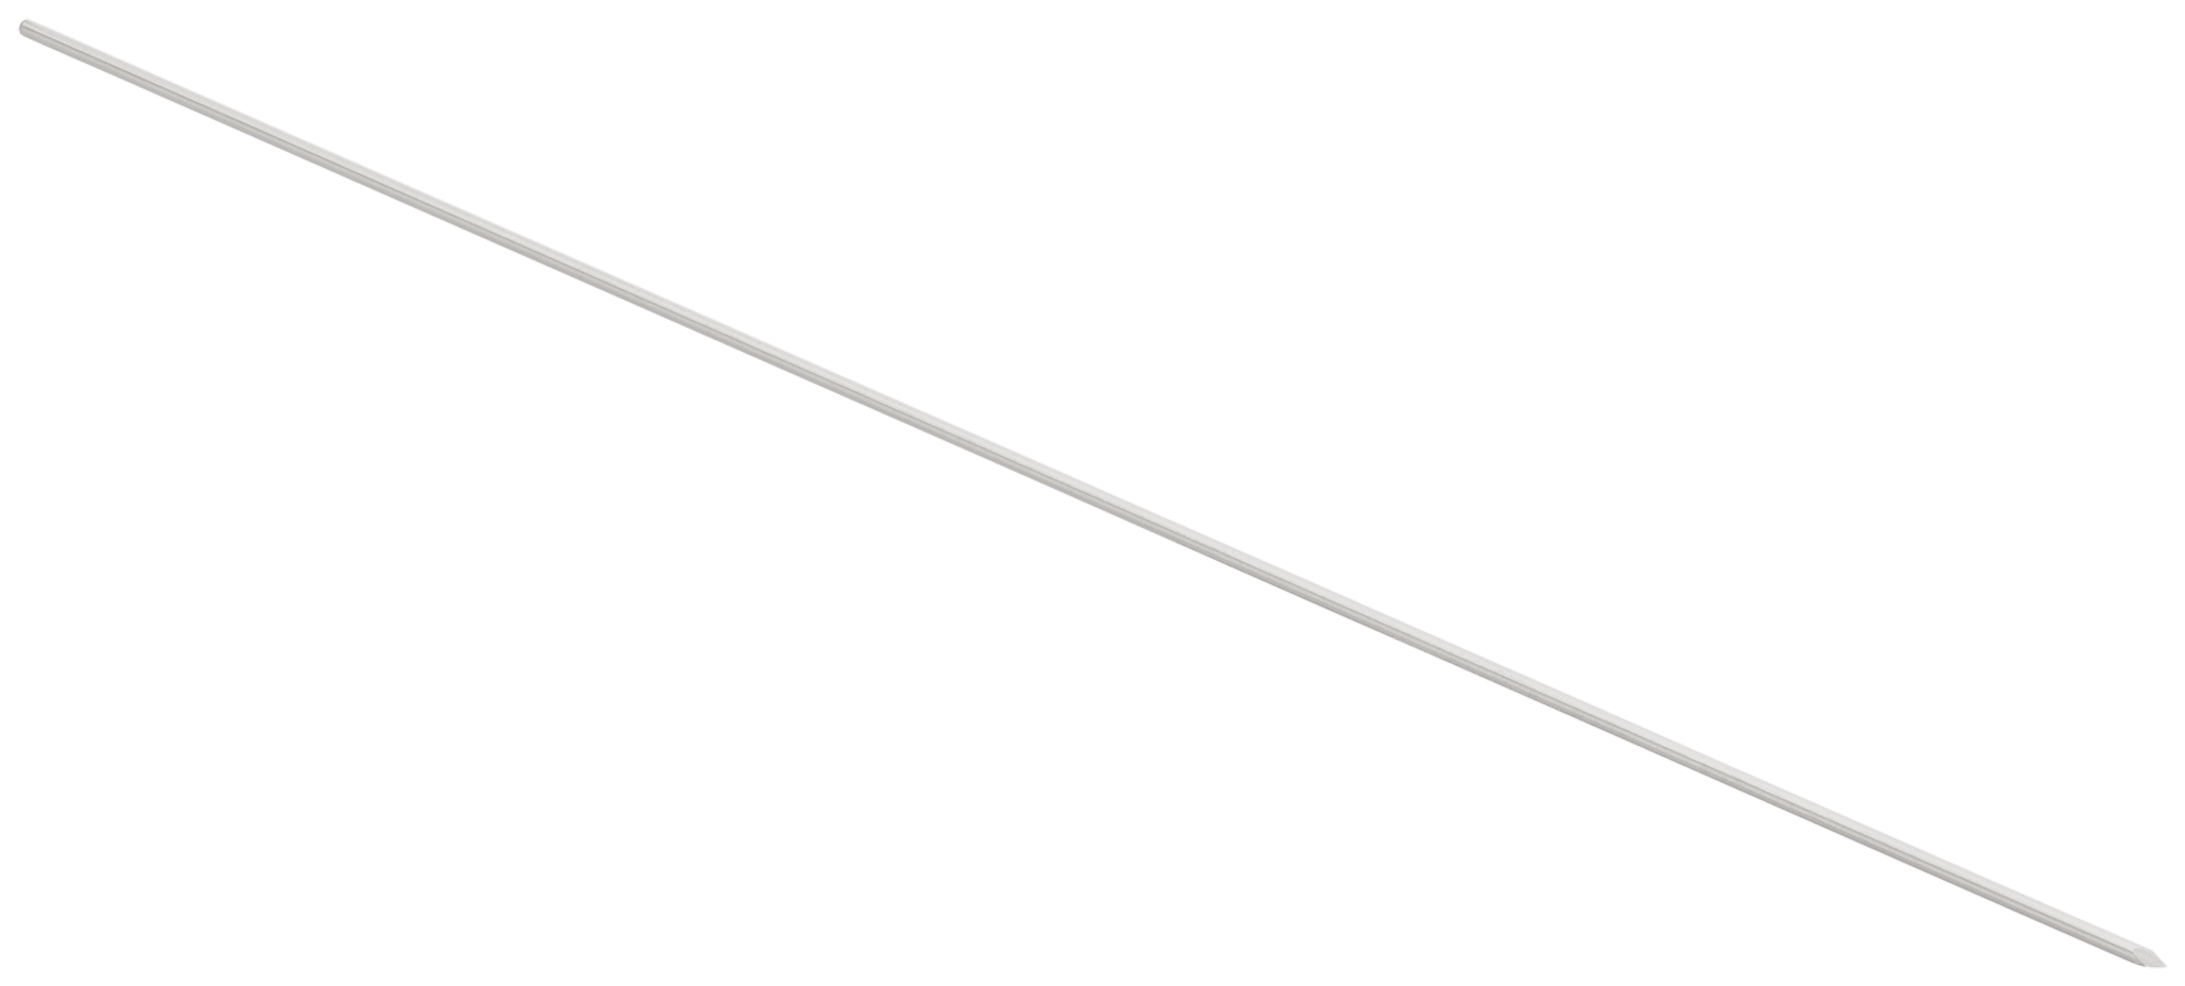 Nitinol Guidewire with Trocar Tip, 0.045" x 5.91" (1.1 mm x 150 mm)